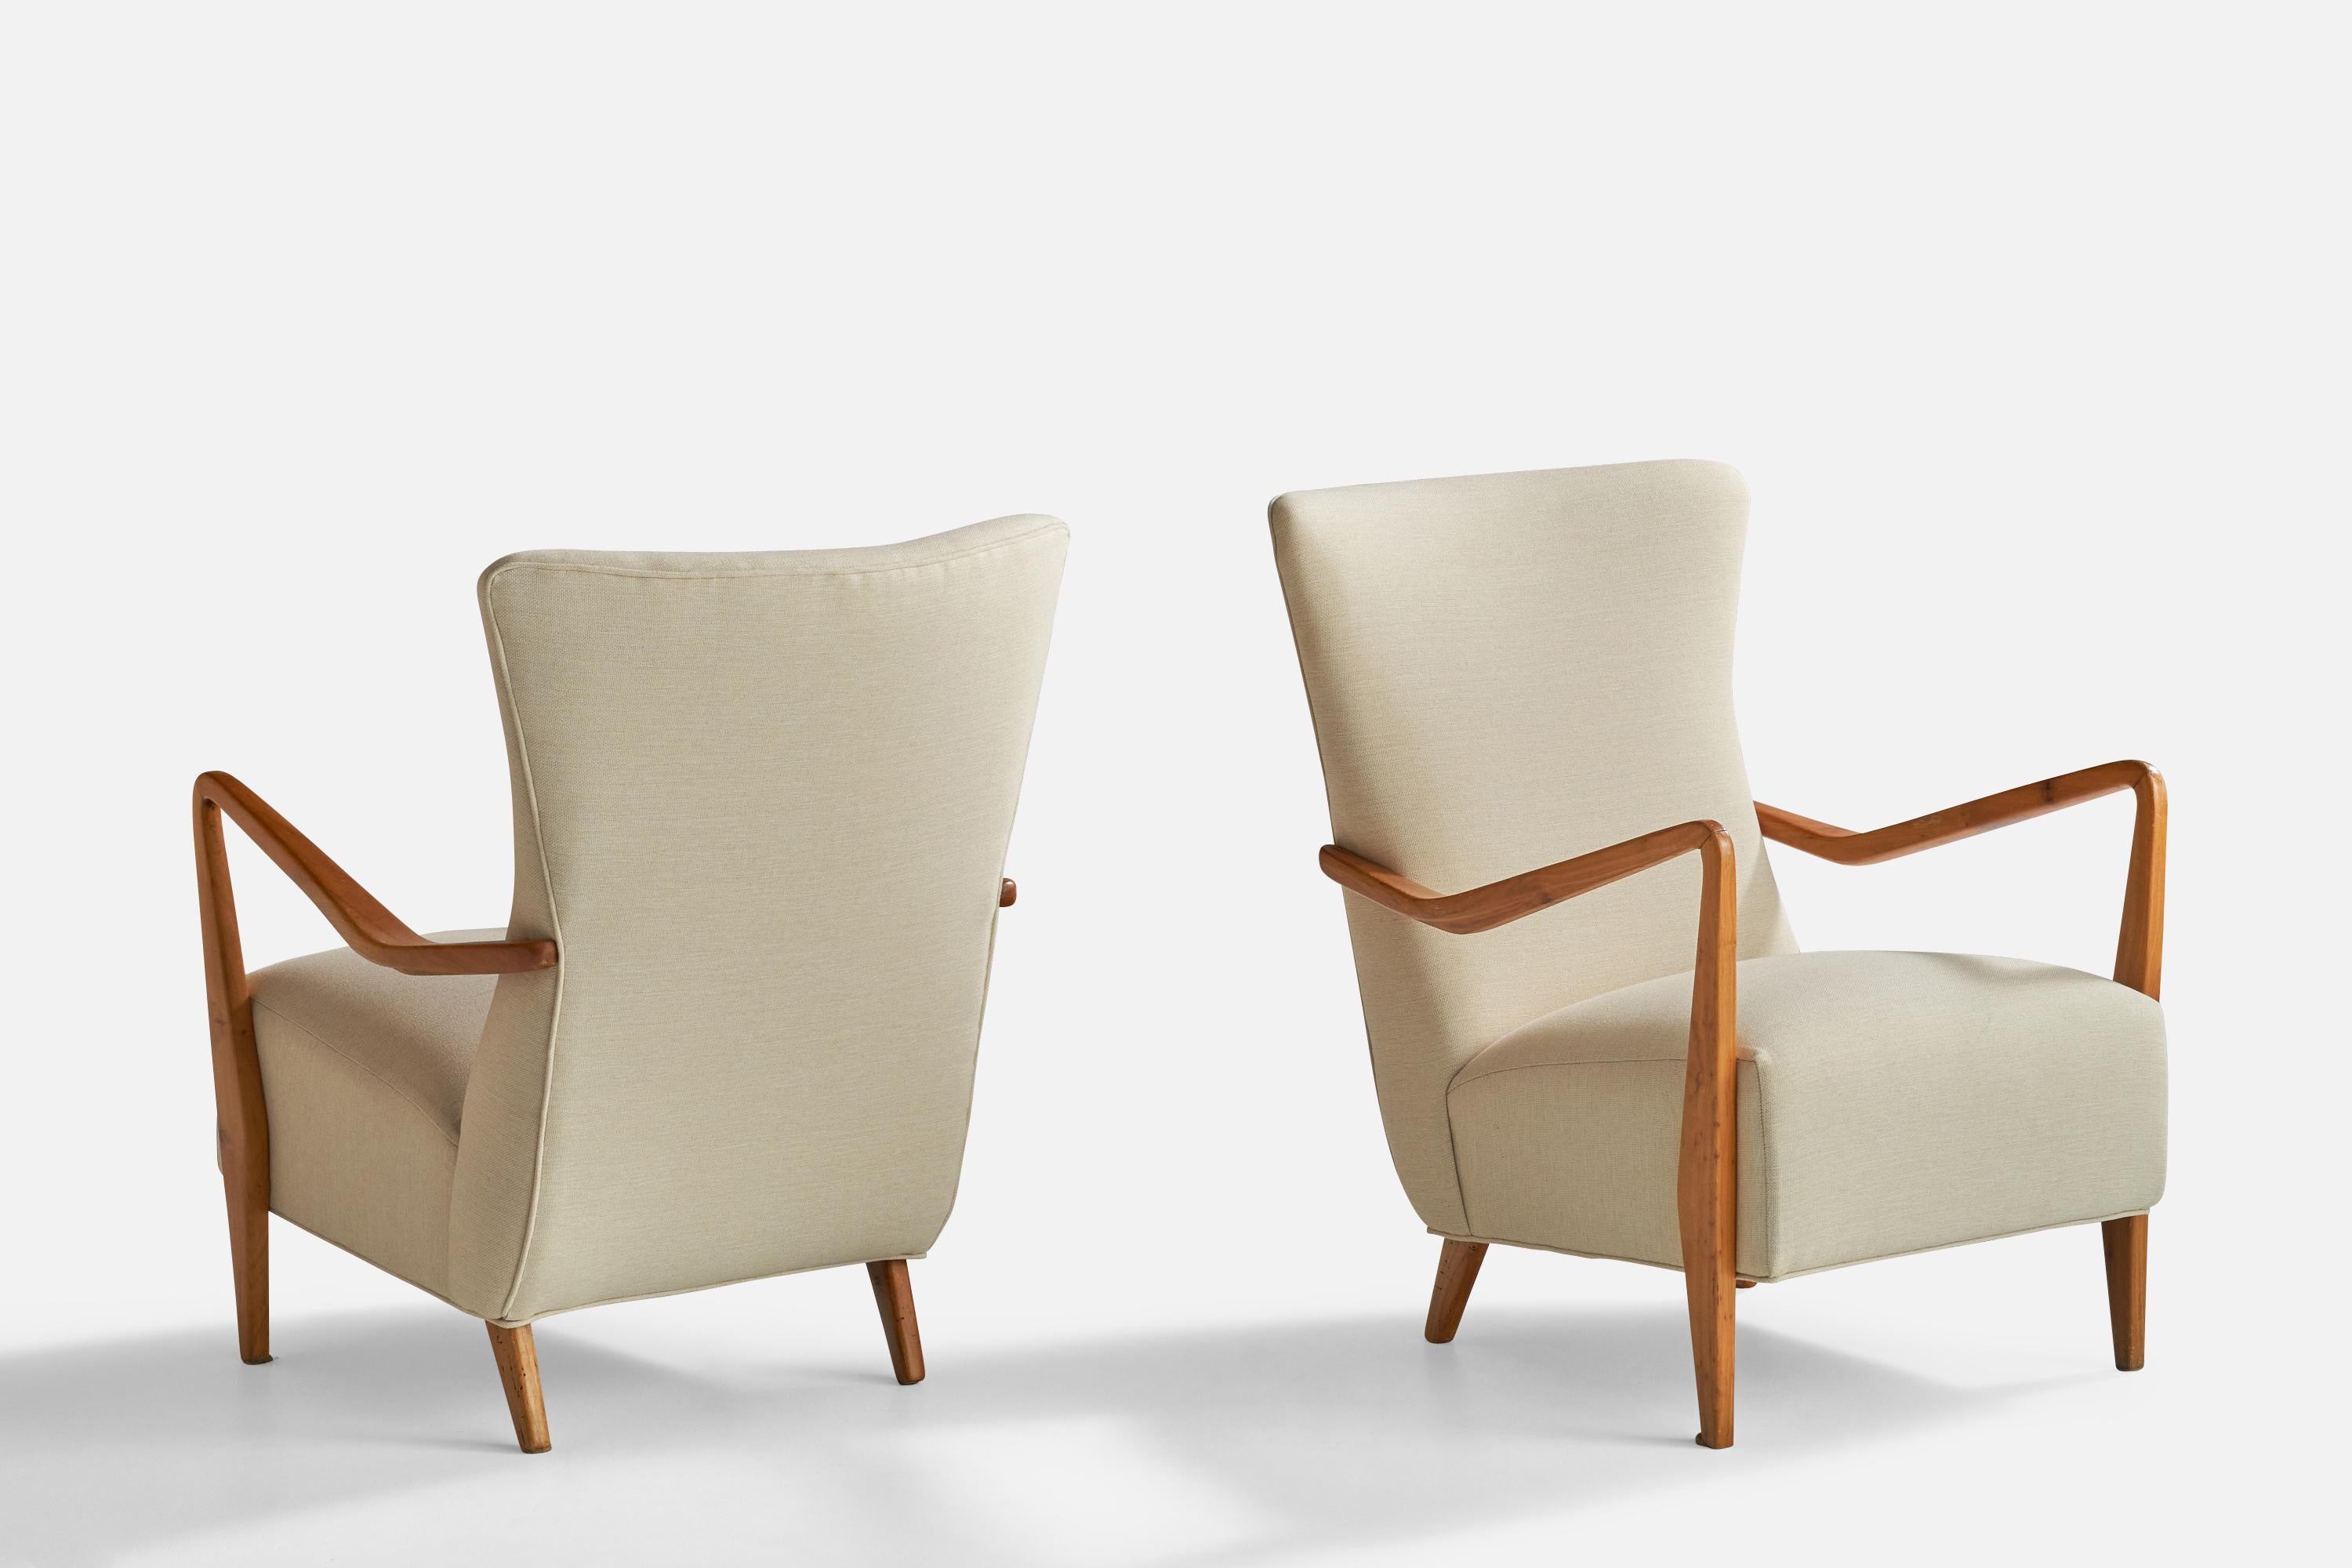 Paire de chaises longues en noyer et tissu blanc, conçues et produites en Italie, années 1950.

Hauteur du siège : 15